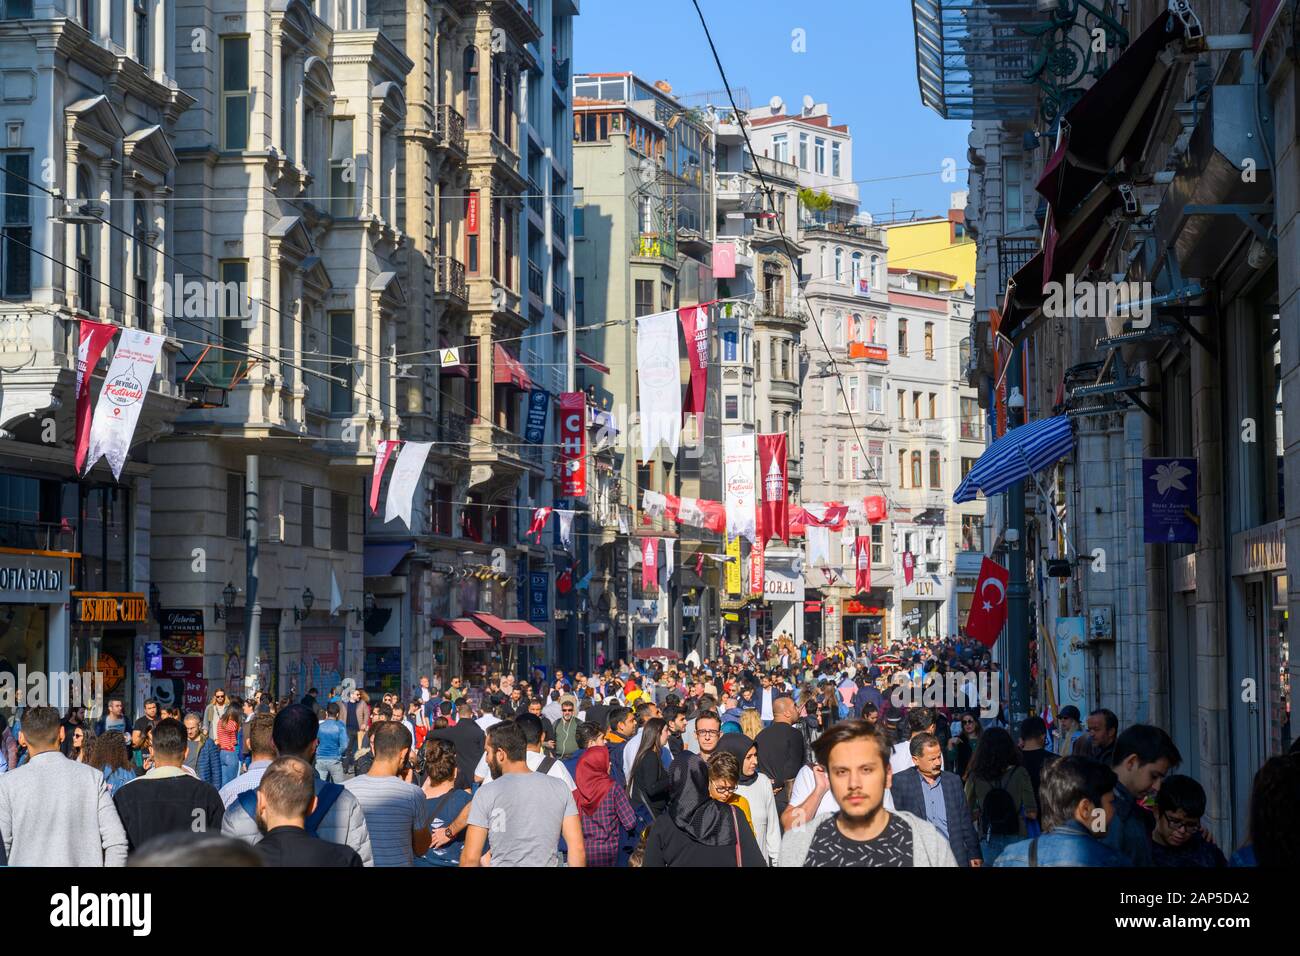 Türkei, Istanbul, Beyoglu, Istiklal Caddesi (Unabhängigkeitsstrasse). Sie ist eine Fussgüngerzone und ist tagsüber Einkaufsstrasse und nachts eines de Stock Photo